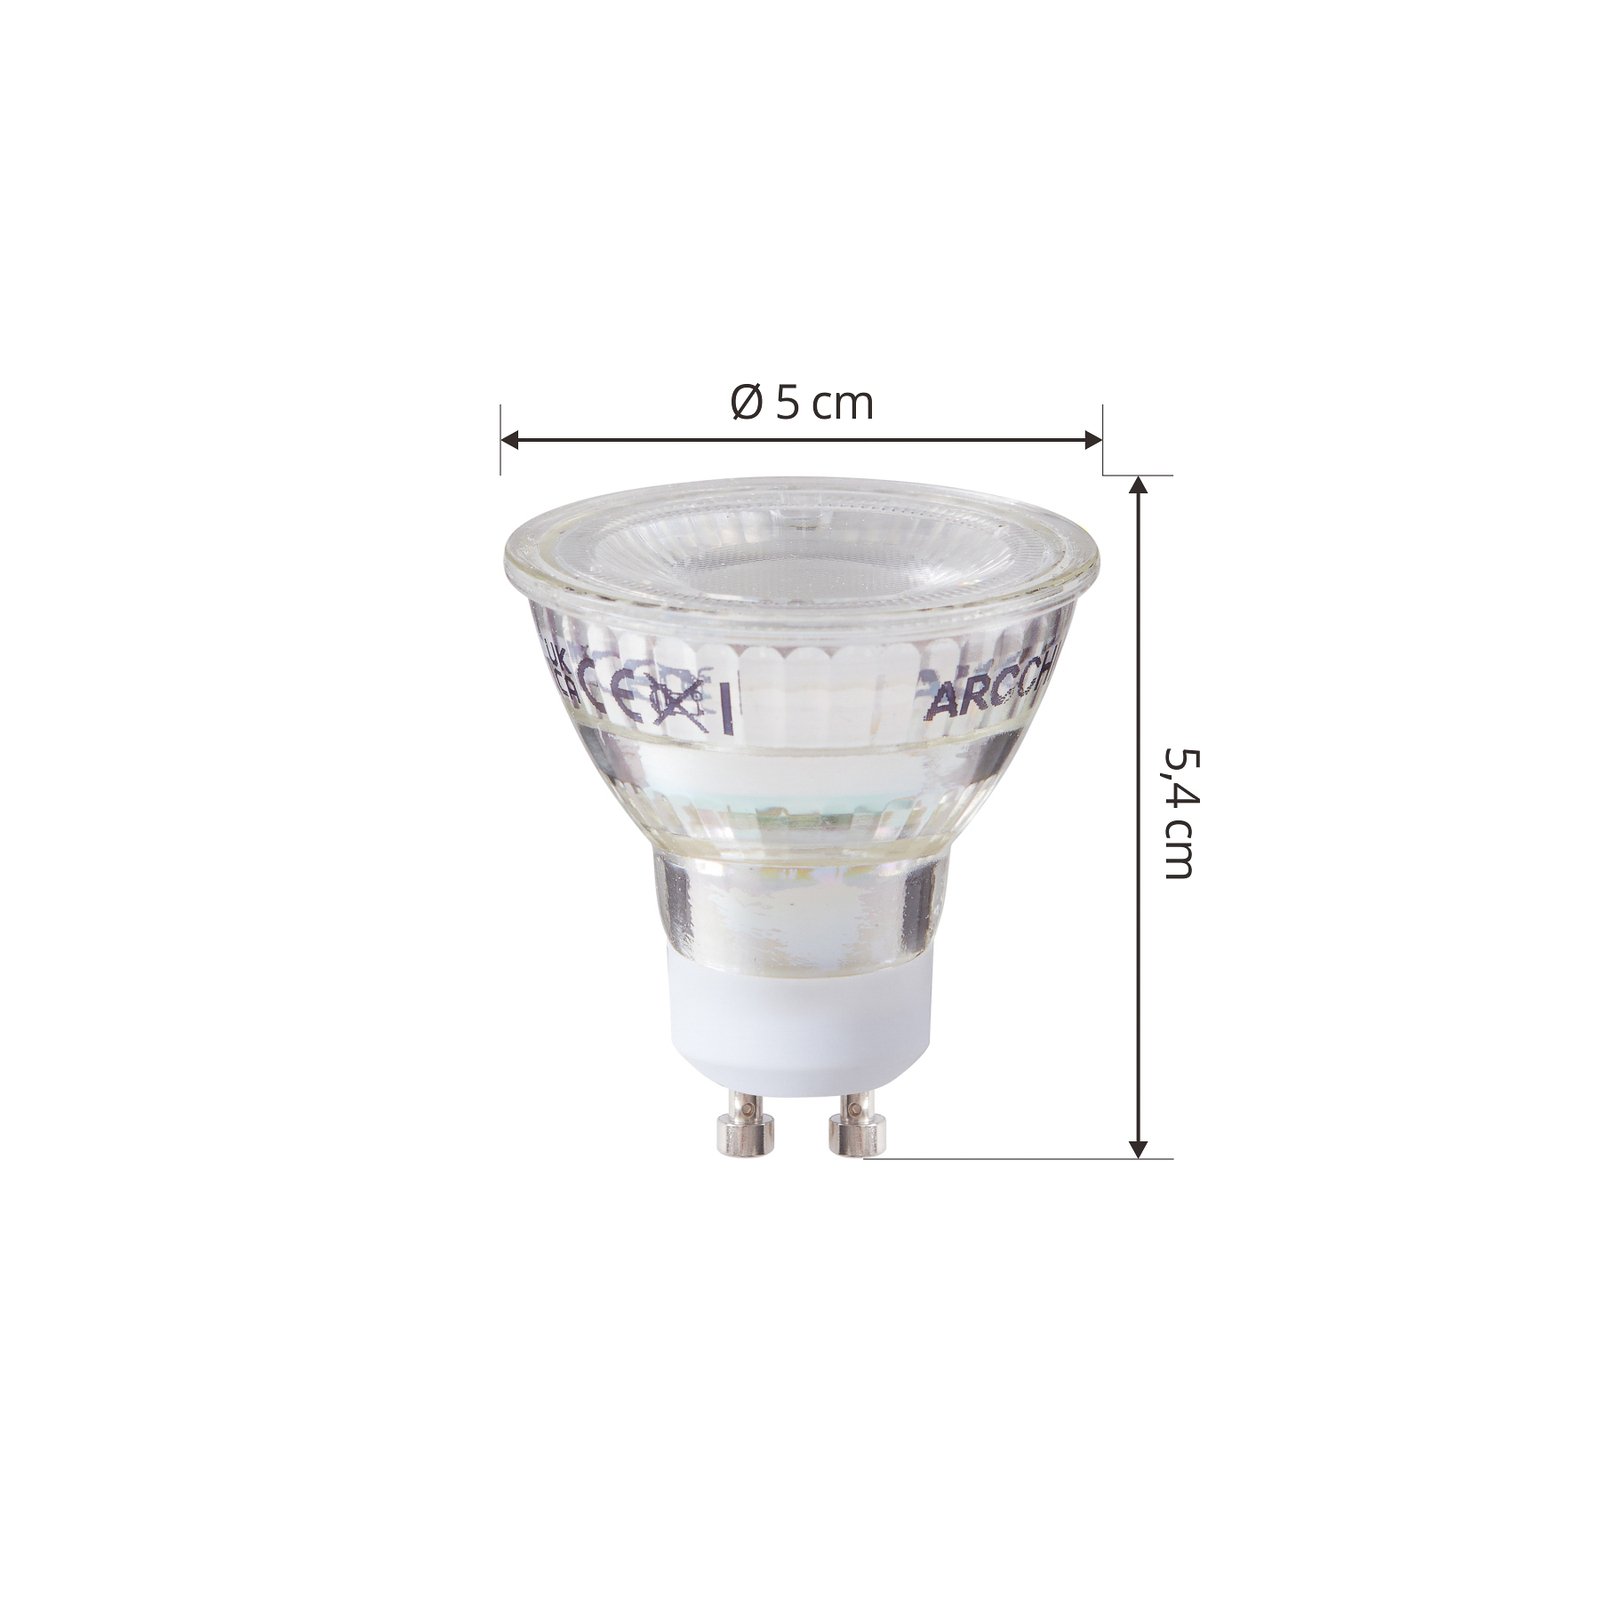 Λαμπτήρας LED Arcchio GU10 2.5W 6500K 450lm σετ γυαλιού 2 τεμαχίων